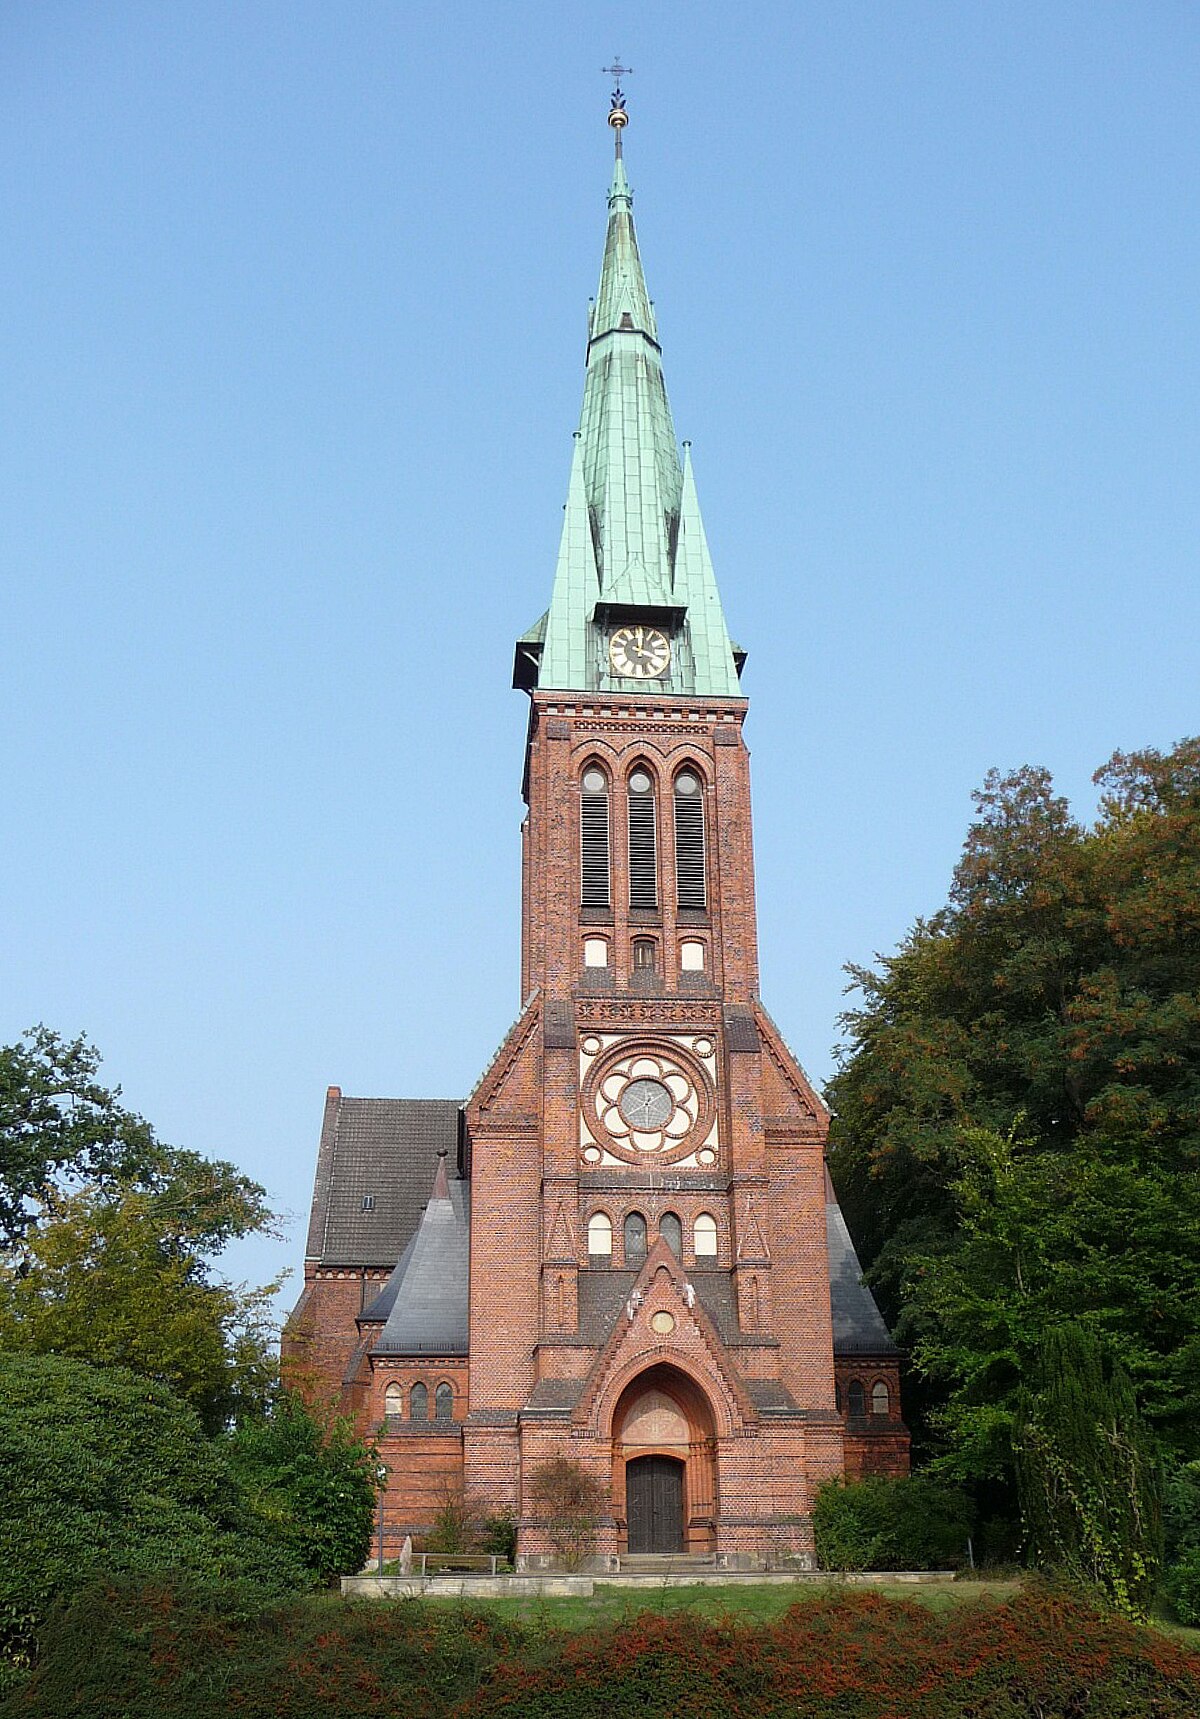 Evangelisch-reformierte Kirche (Bremen-Blumenthal) - Wikipedia